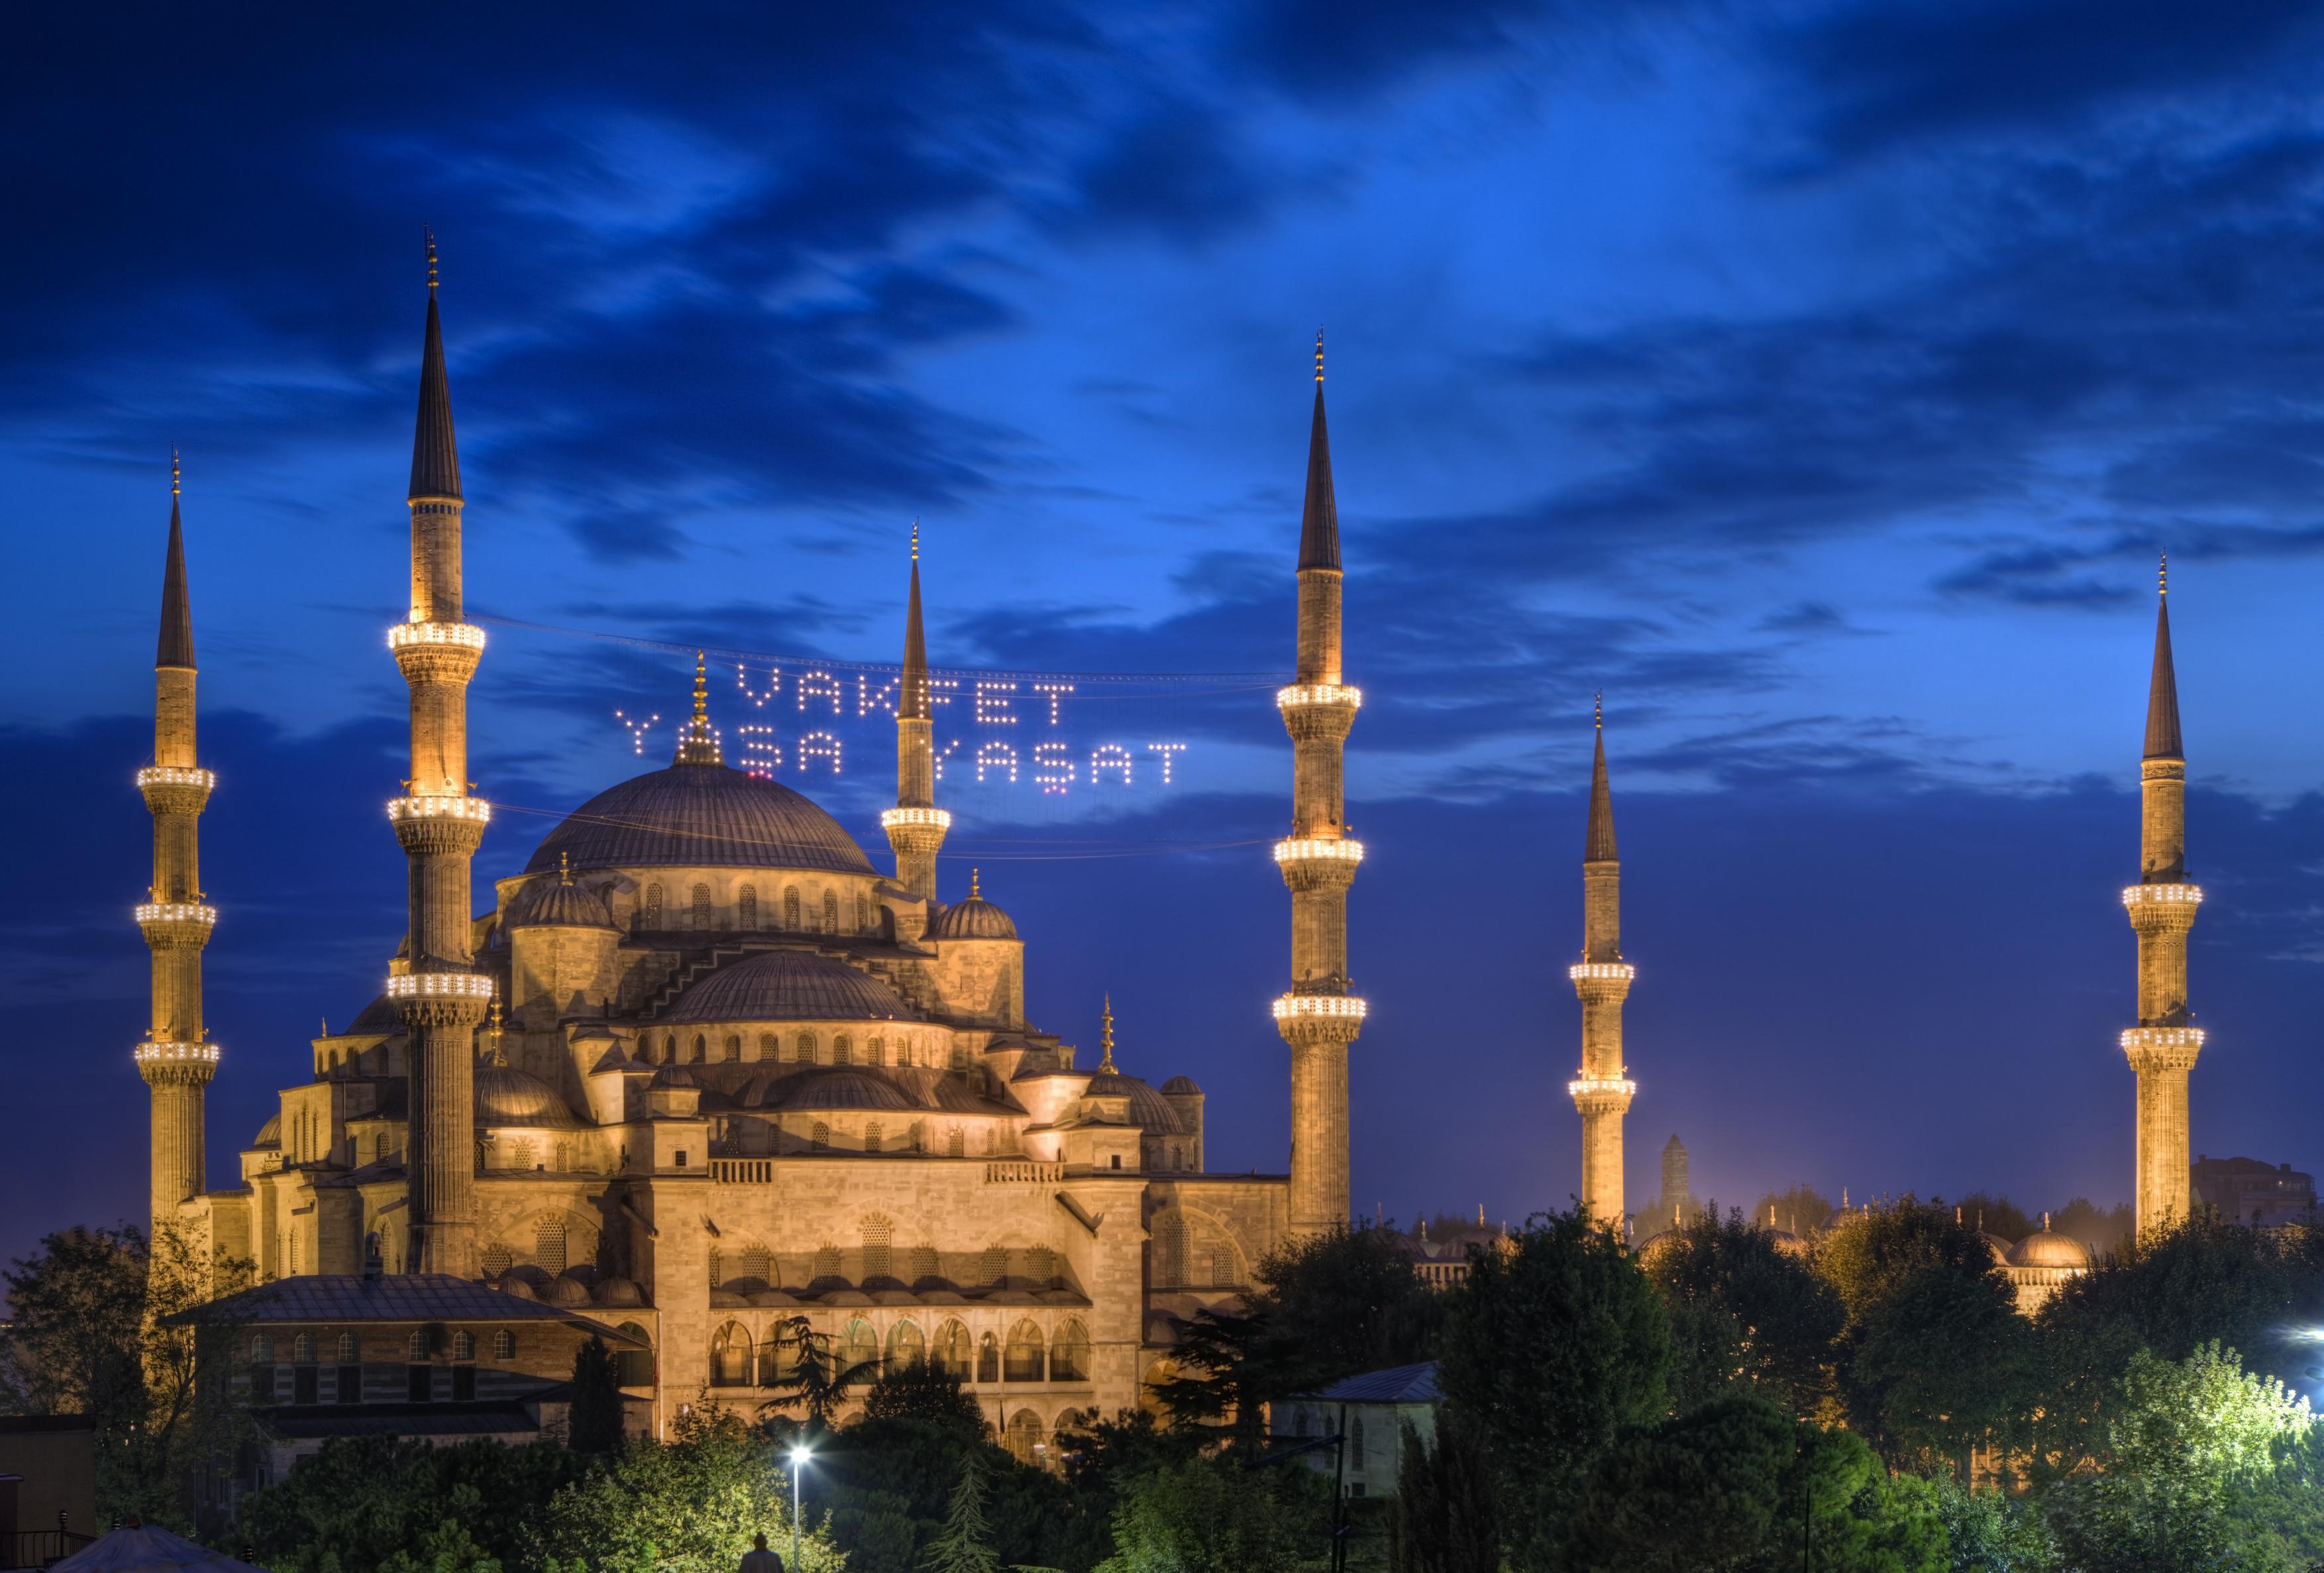 星光璀璨土耳其图片